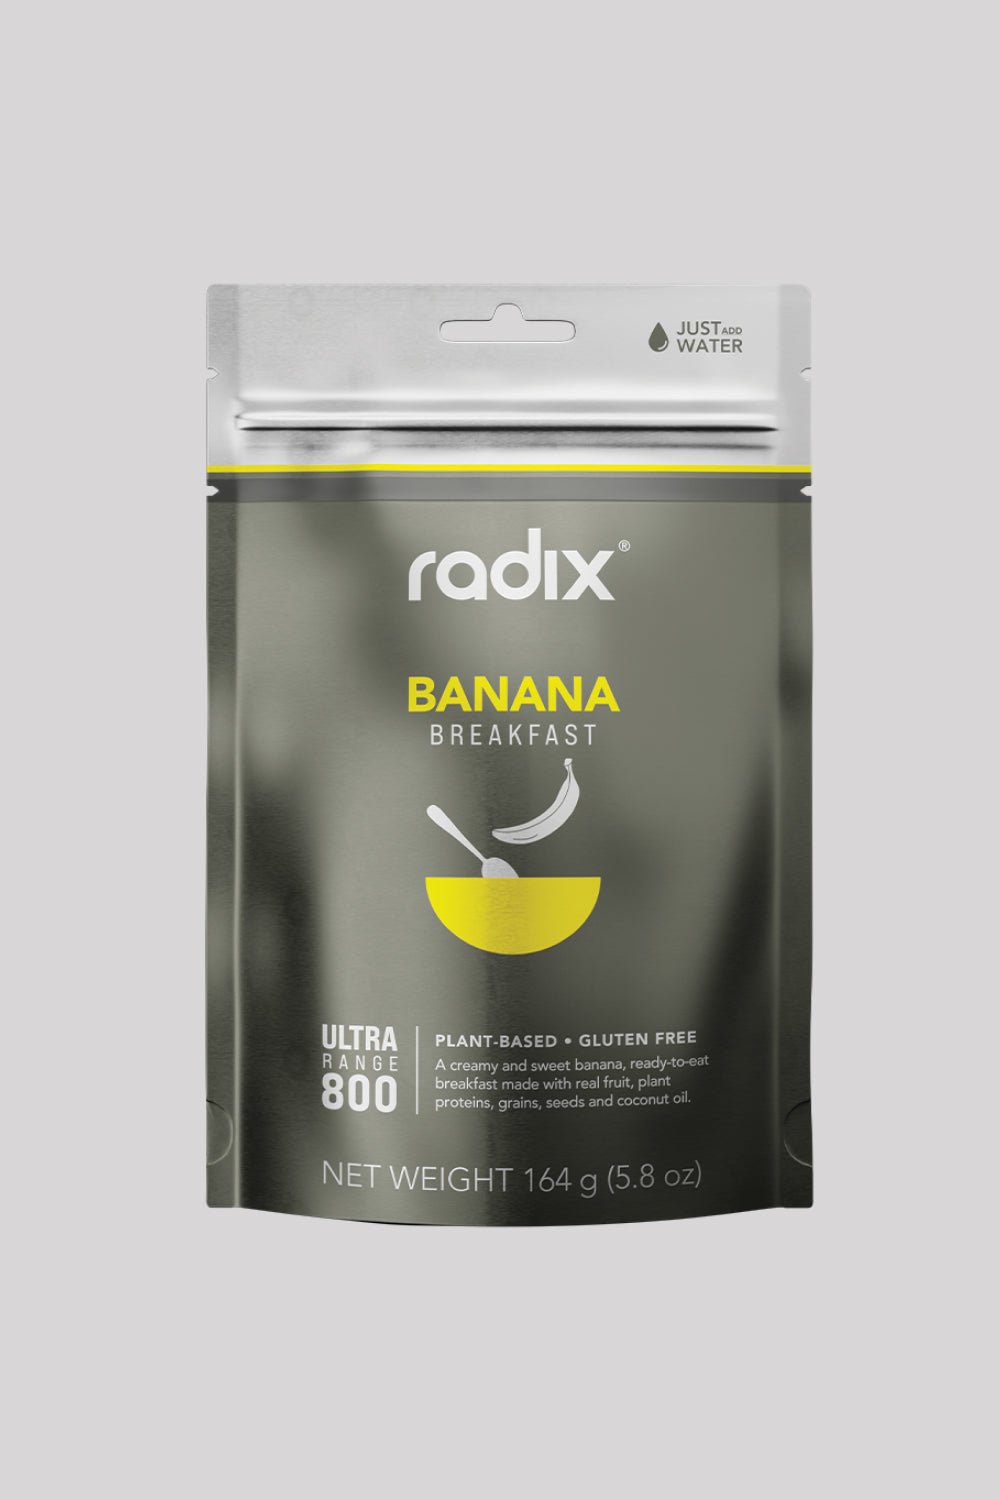 Radix Ultra Breakfasts Banana - 800 kcal | Coffee Outdoors